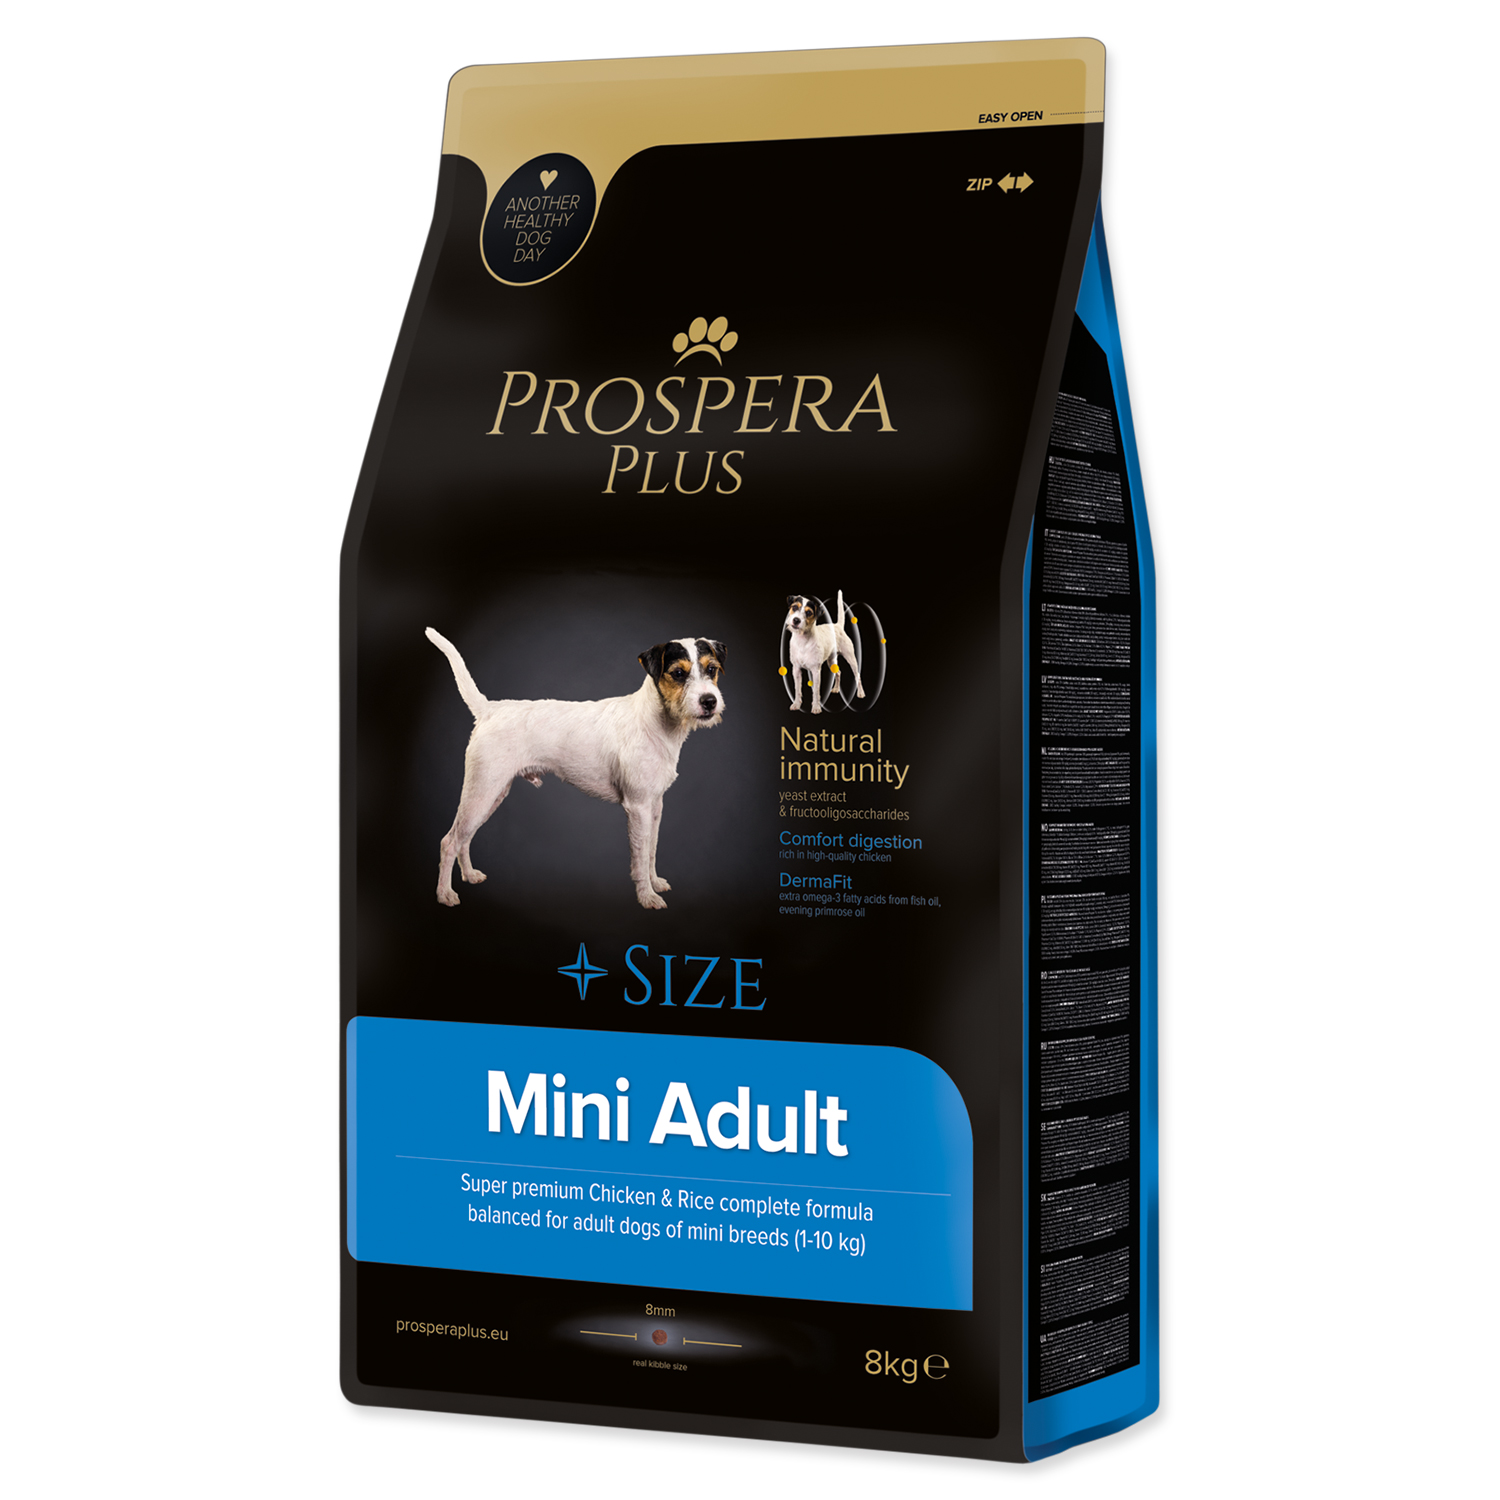 Prospera Plus Kорм для взрослых собак миниатюрных пород Mini Adult (вес взрослой собаки 1 – 10 кг)